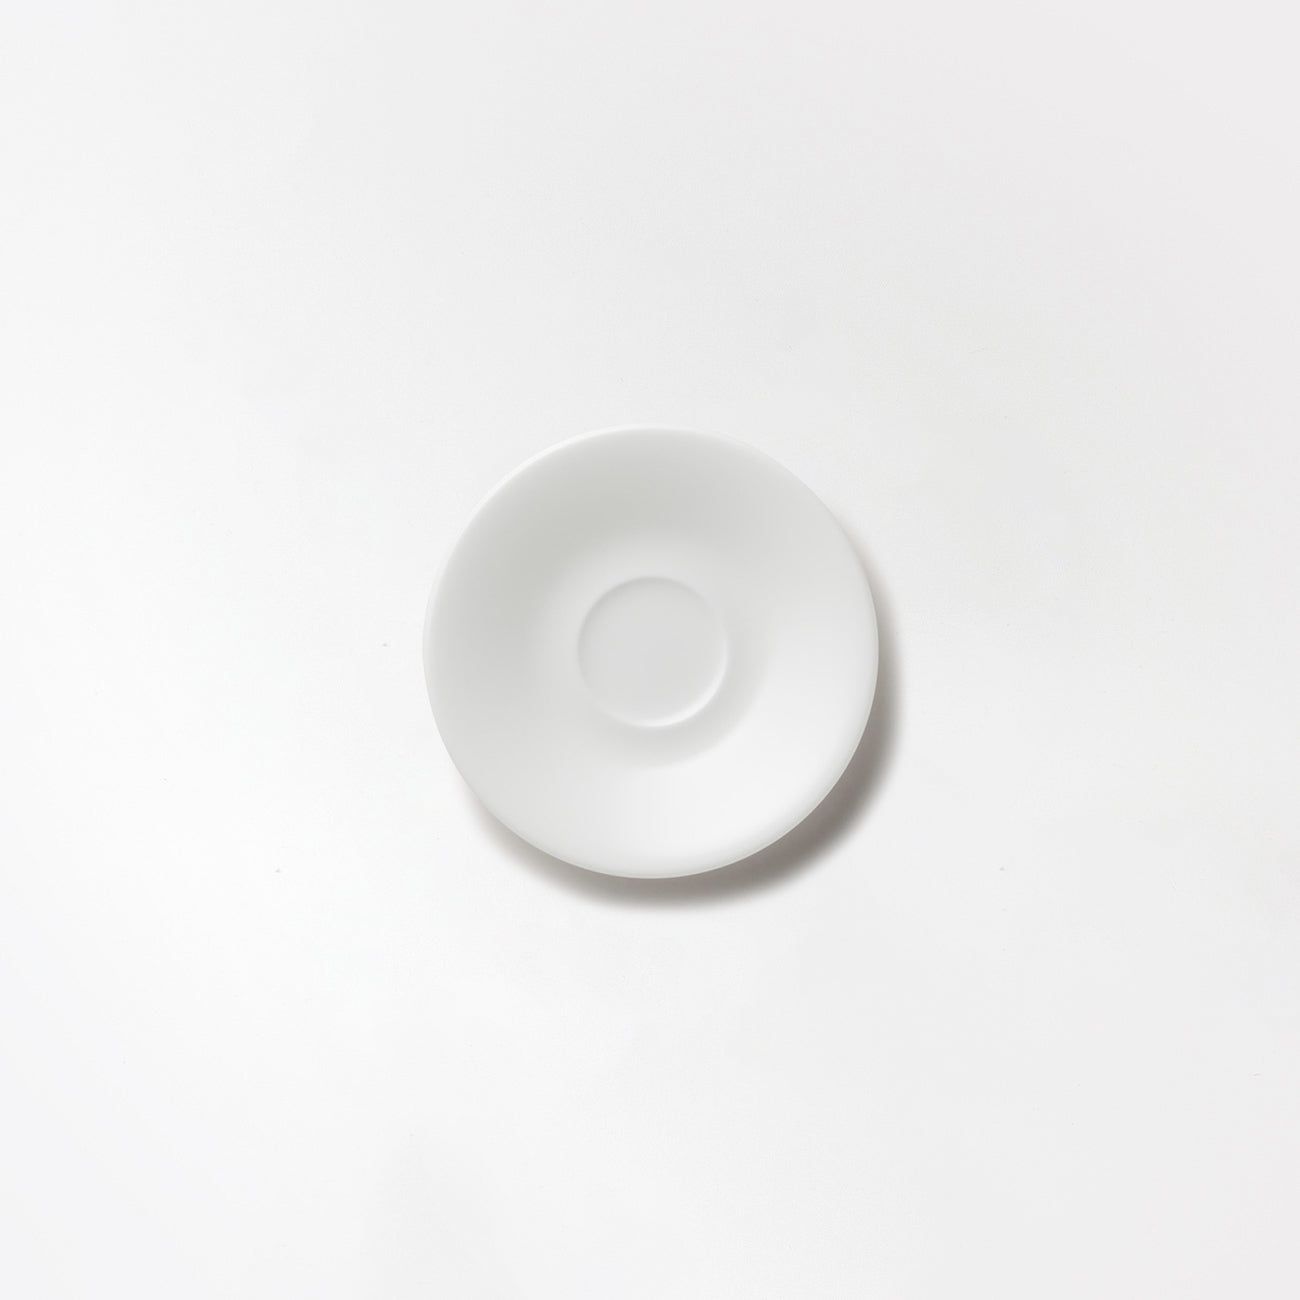 【復興支援商品】コーヒー碗皿 (180cc)